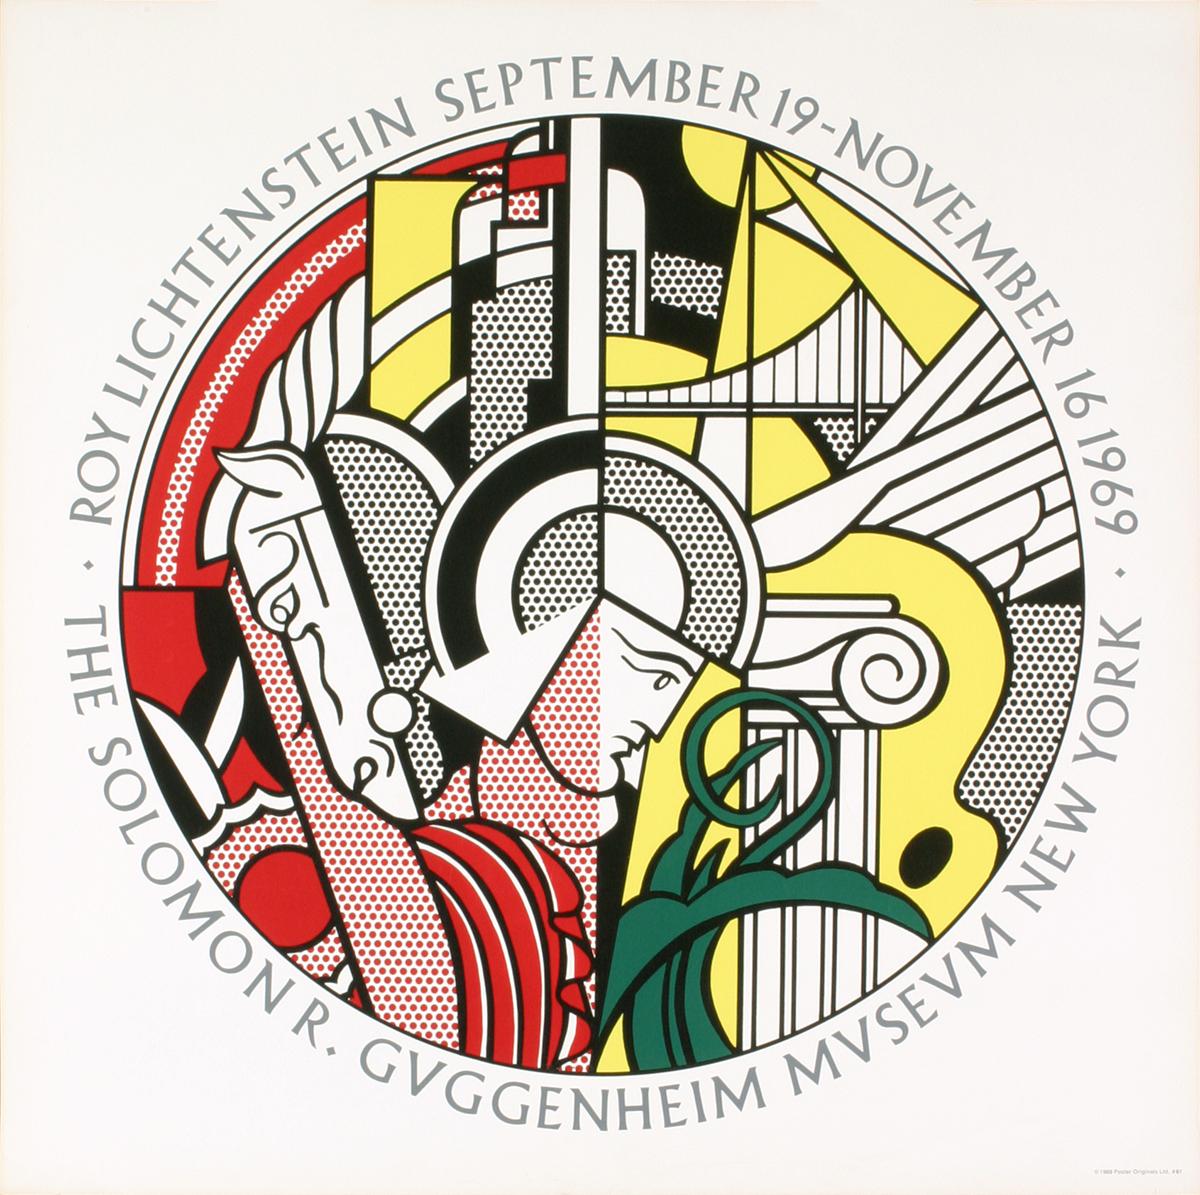 Sku: EF380
Künstler: Roy Lichtenstein
Titel: Guggenheim-Museum
Jahr: 1969
Unterschrieben: Nein
Medium: Serigraphie
Papierformat: 28,75 x 28,75 Zoll (73,025 x 73,025 cm)
Bildgröße: 23,25 x 23,25 Zoll (59,055 x 59,055 cm)
Auflagenhöhe: 3000
Gerahmt: